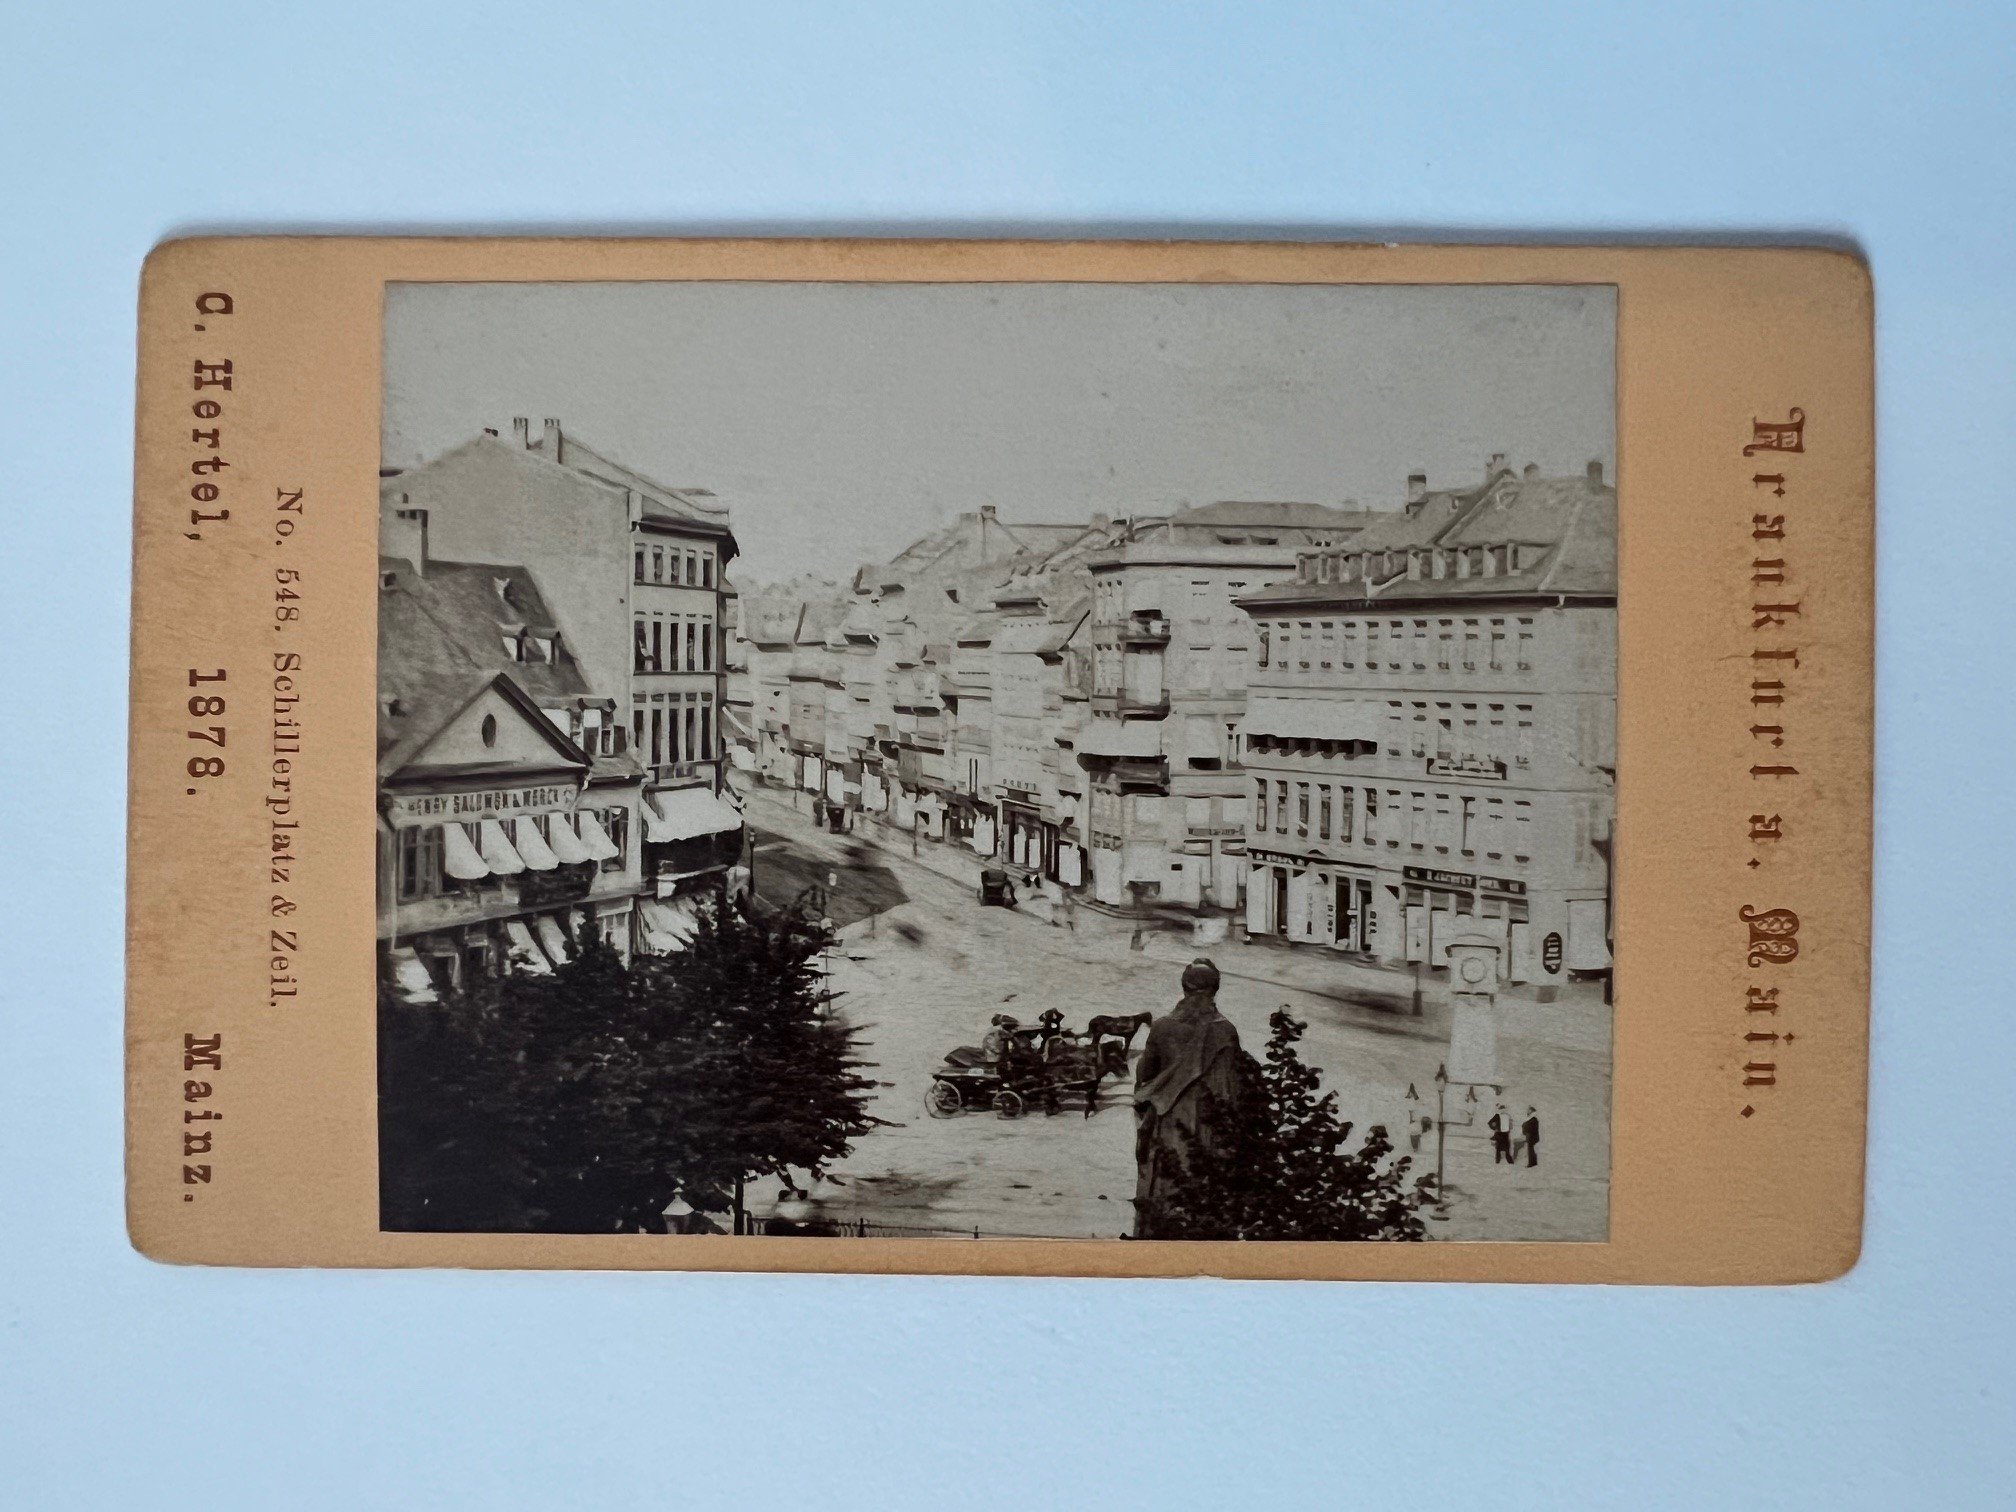 CdV, Carl Hertel, Frankfurt, Schillerplatz und Zeil, 1878. (Taunus-Rhein-Main - Regionalgeschichtliche Sammlung Dr. Stefan Naas CC BY-NC-SA)